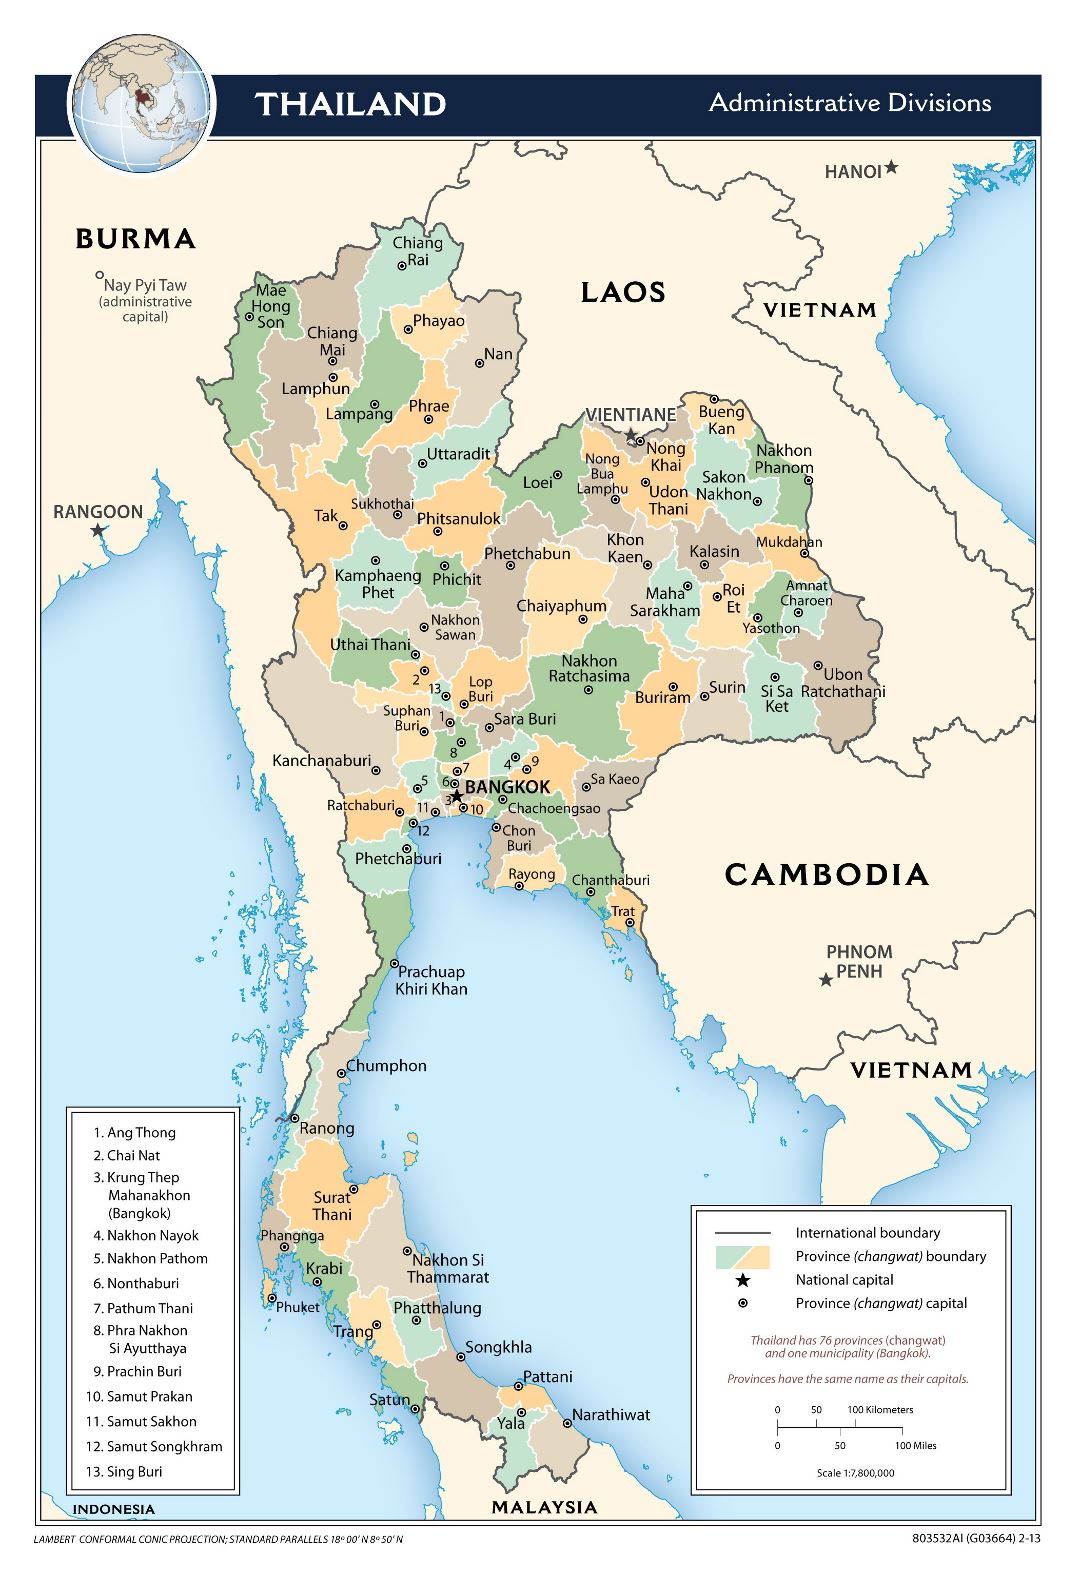 Grande mapa de administrativas divisiones de Tailandia - 2013